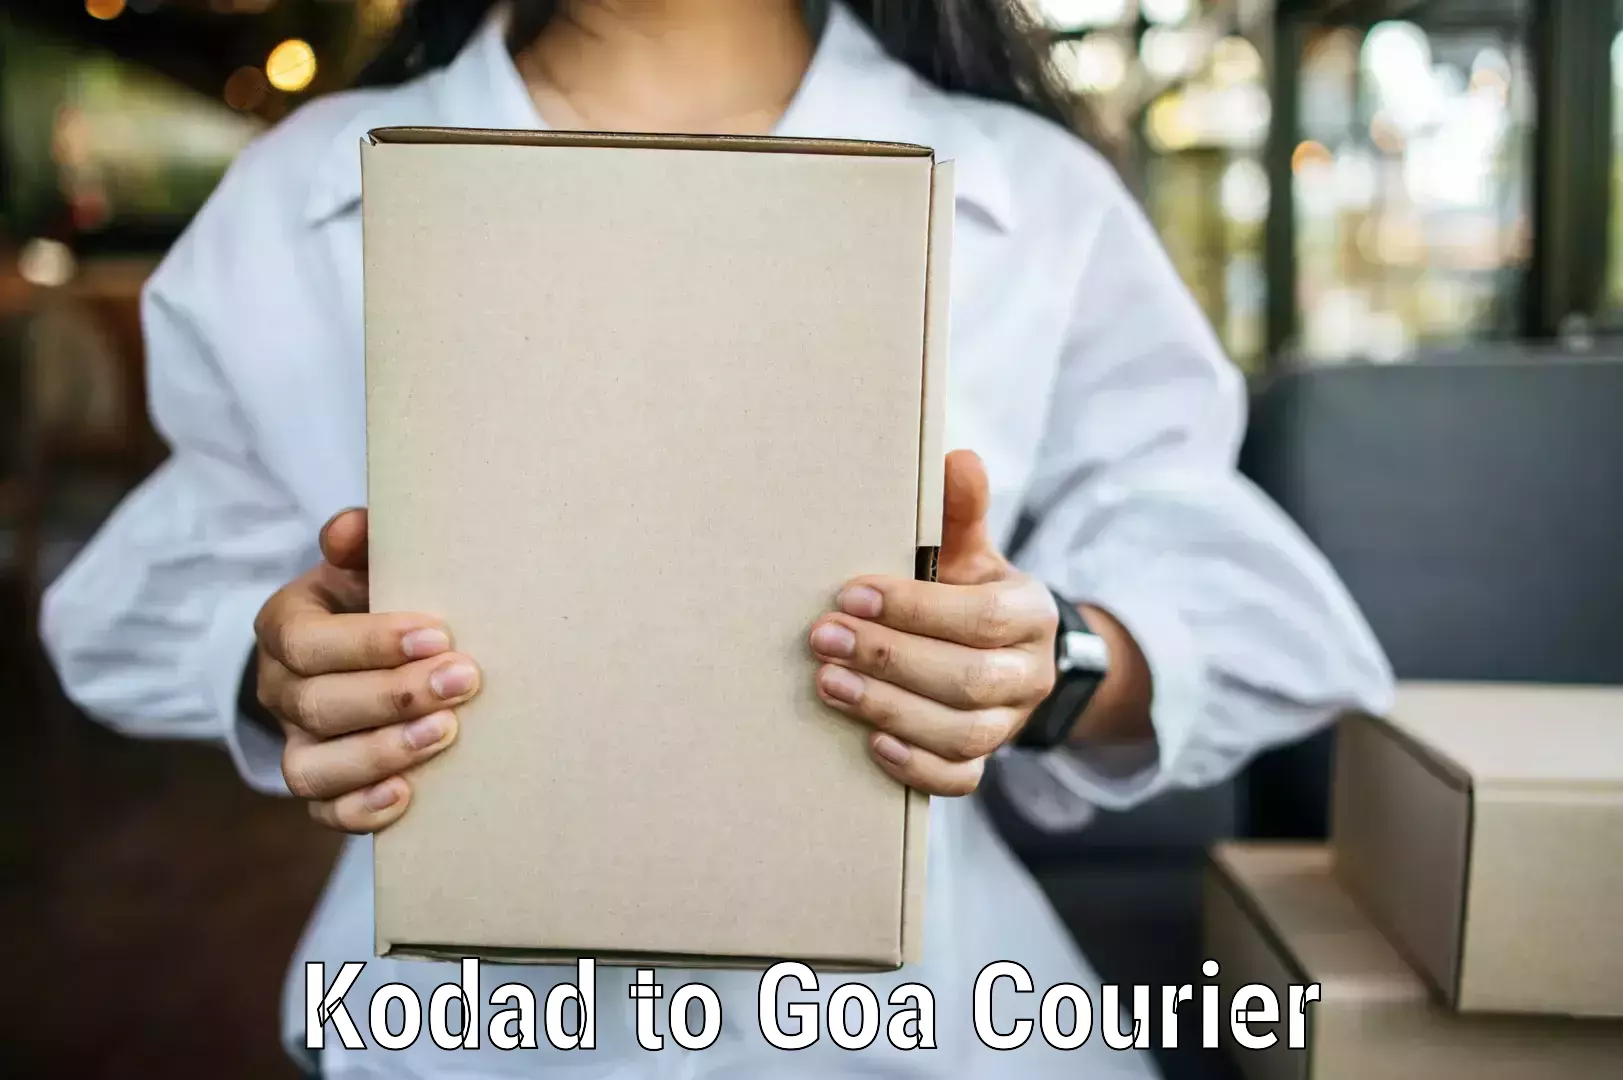 Global courier networks Kodad to IIT Goa